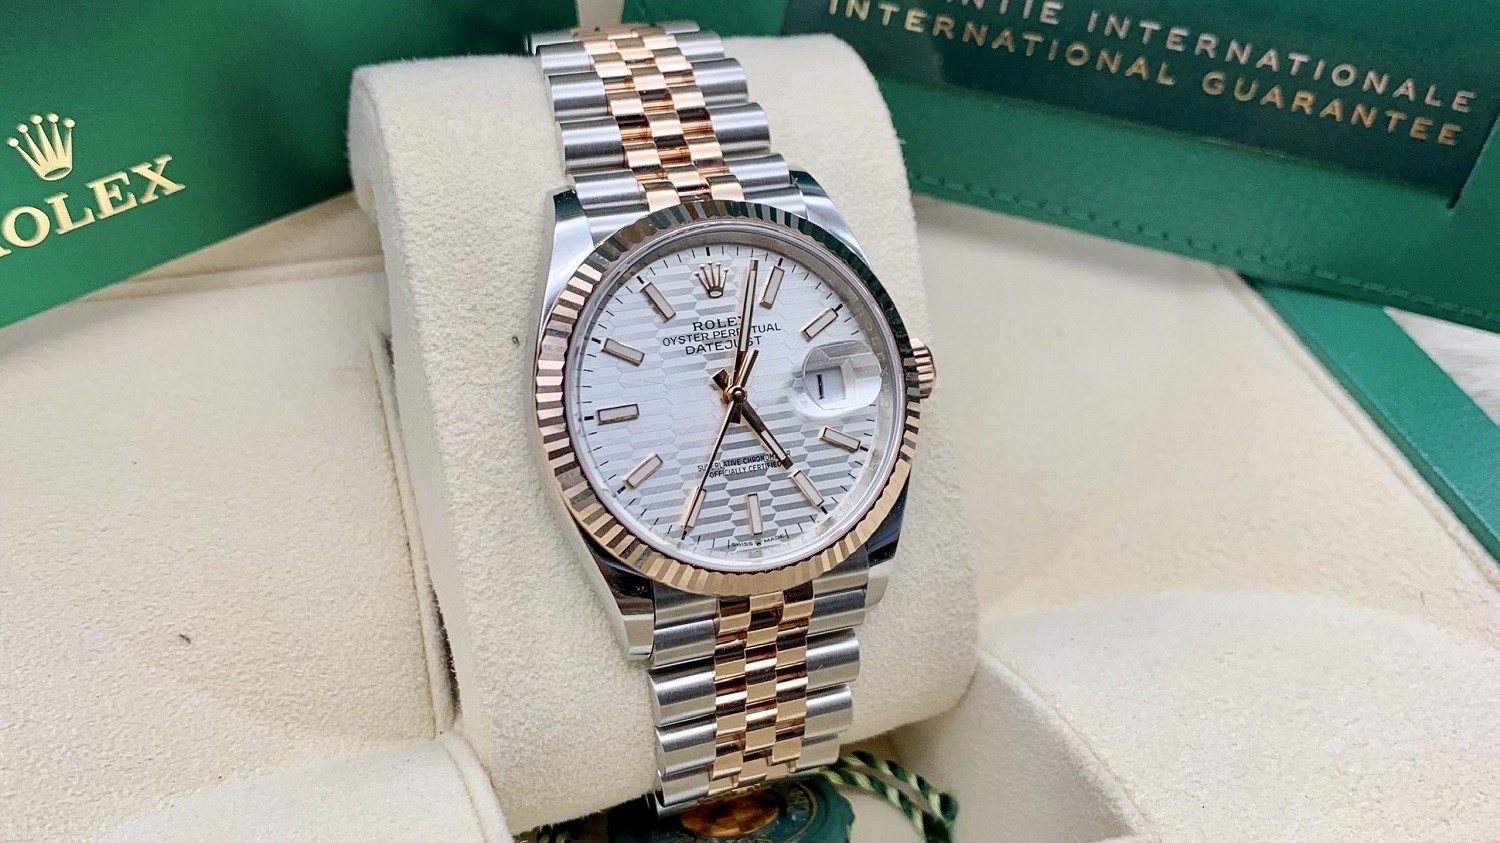  Top đồng hồ Rolex giá rẻ đáng mua nhất dưới 300 triệu